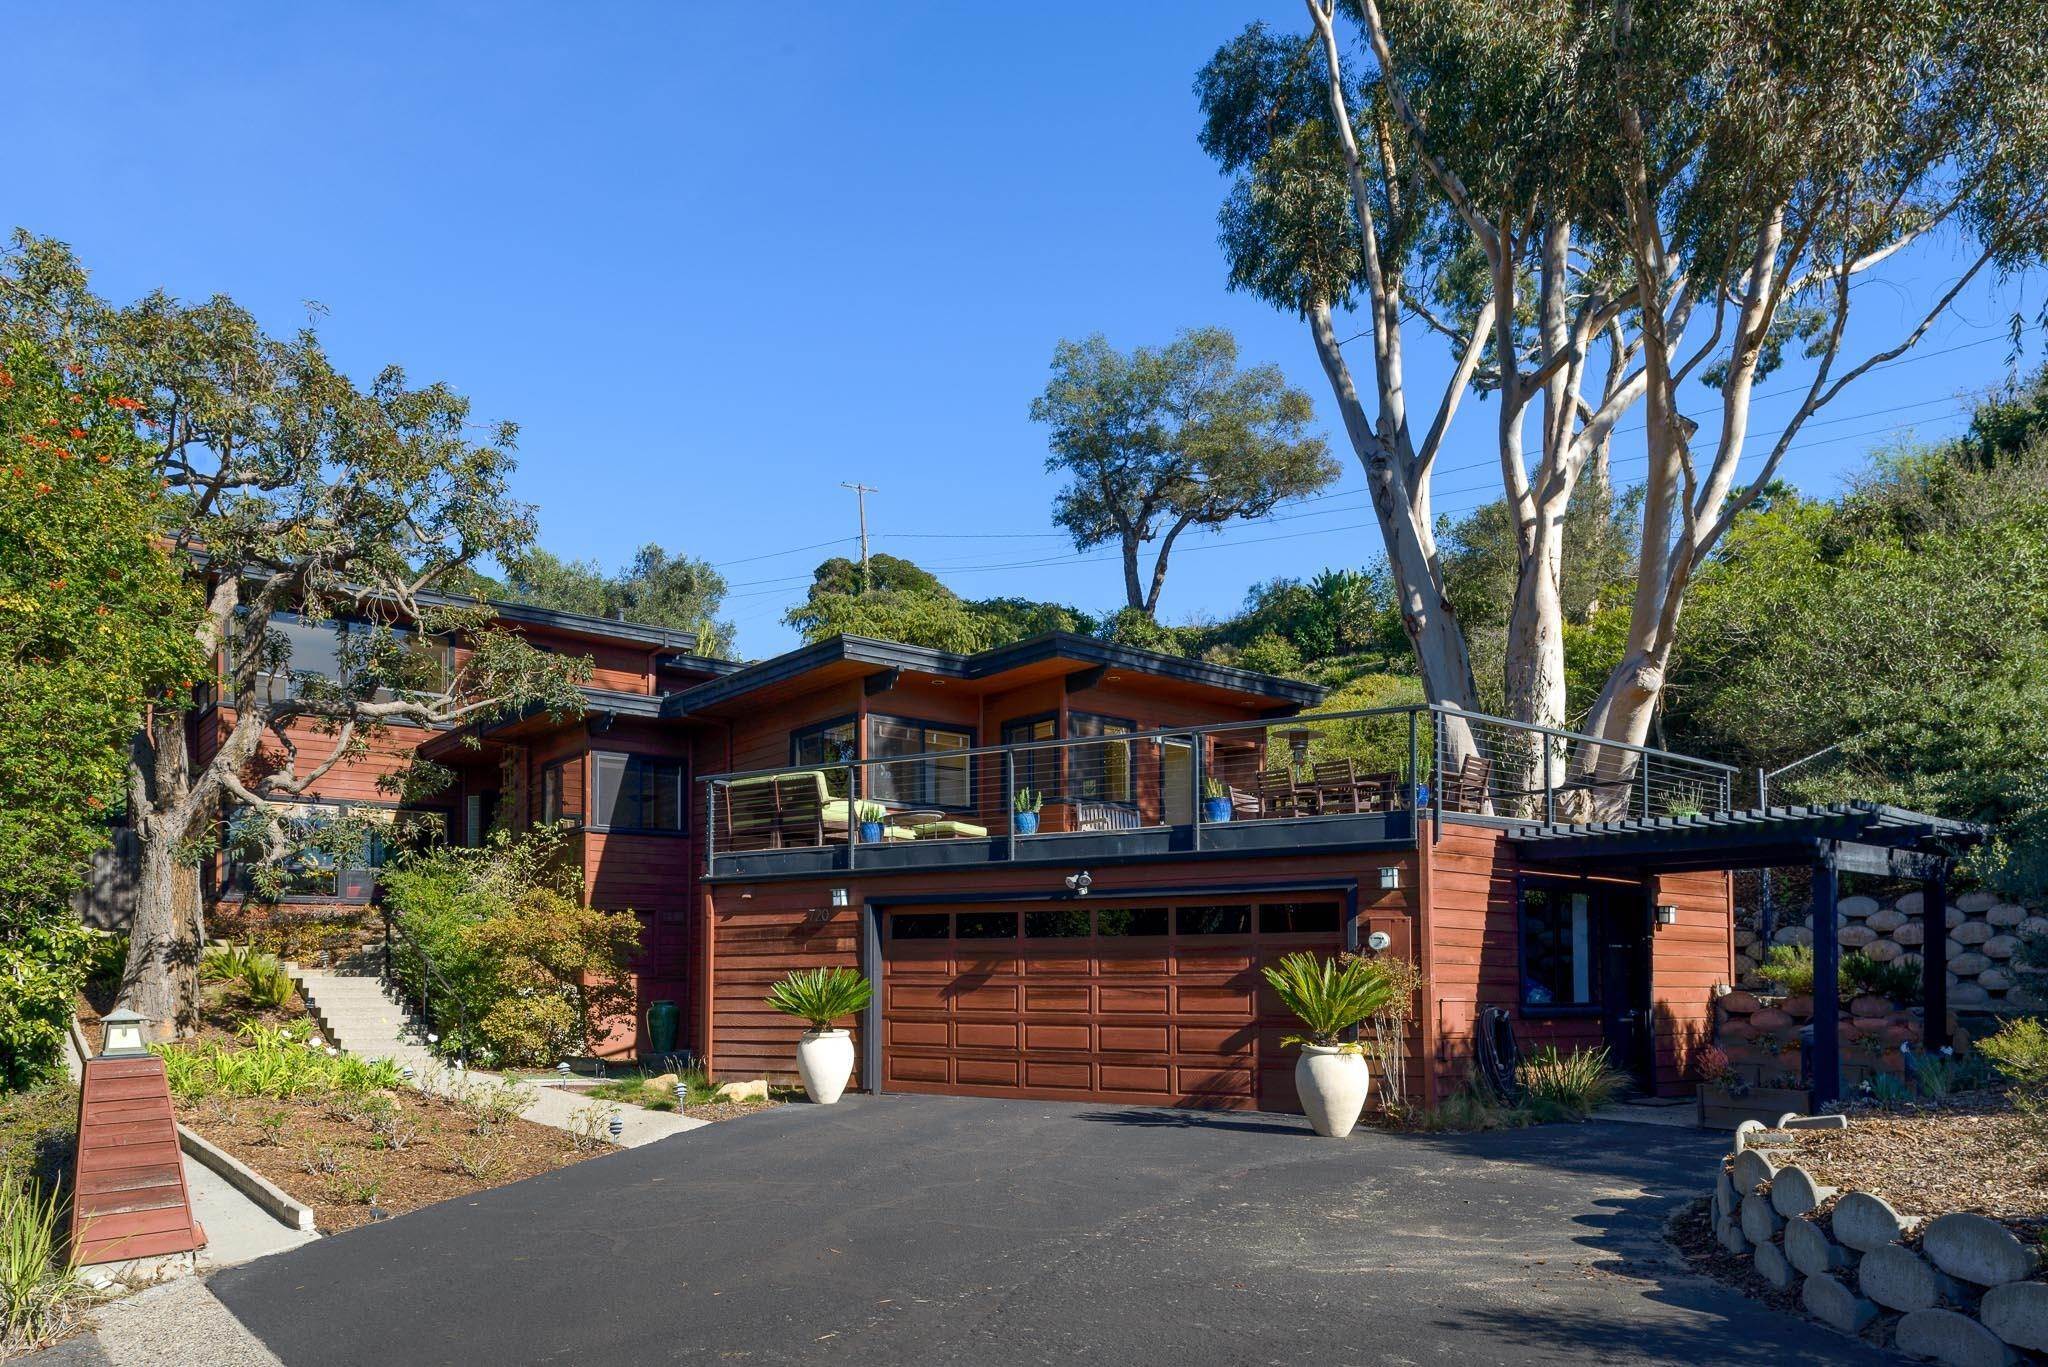 1. Estate at 720 Fellowship Road Santa Barbara, California 93109 United States